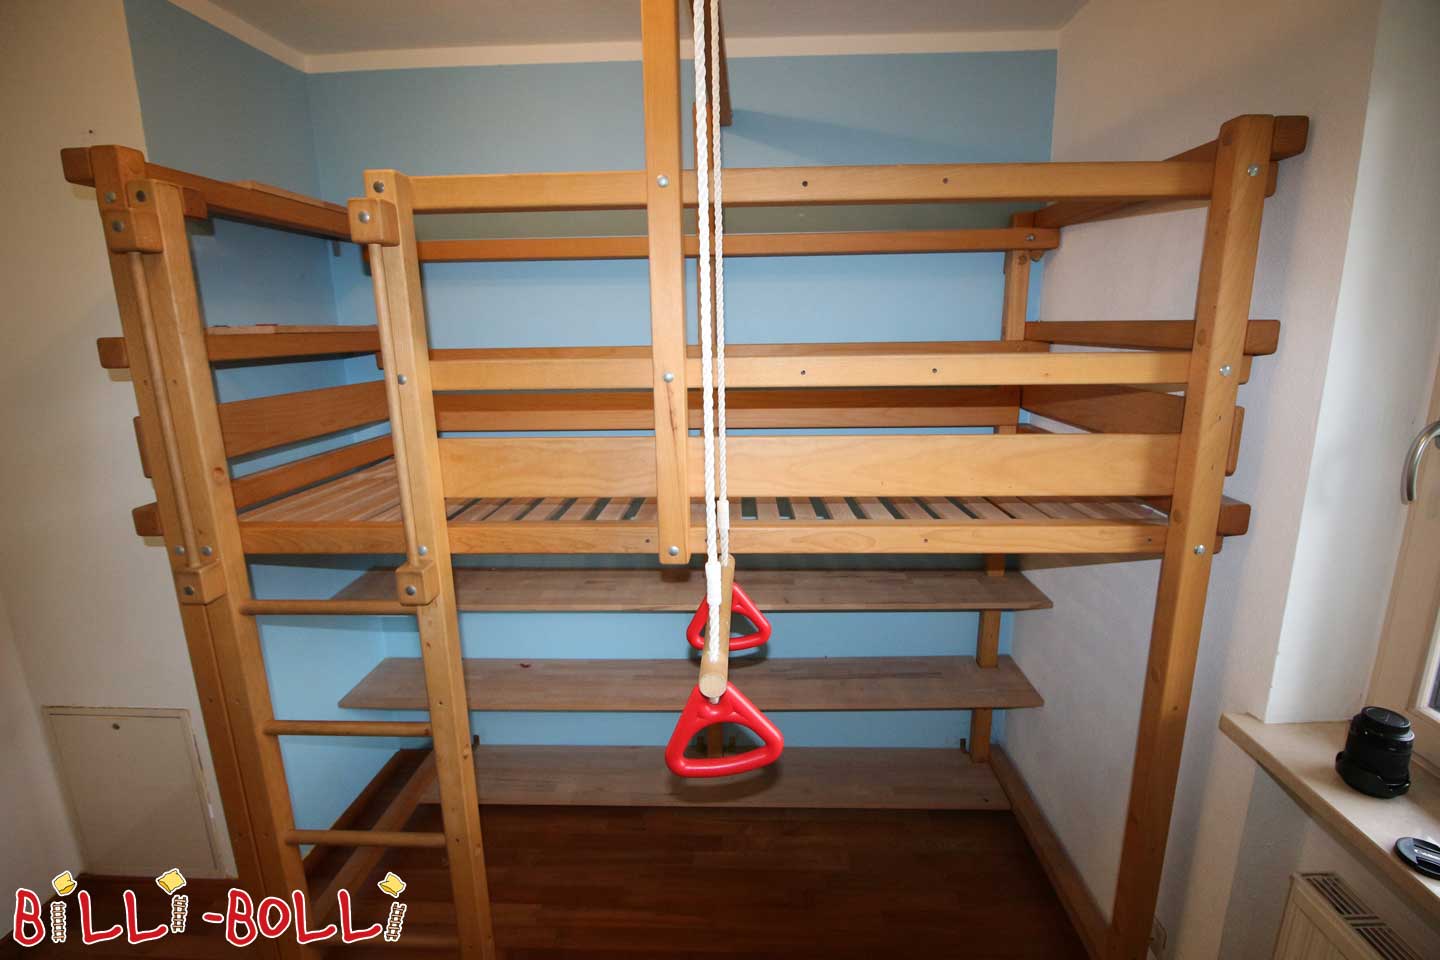 Tetőtéri ágy, amely a gyermekkel nő (Kategória: Tetőtéri ágy használt)